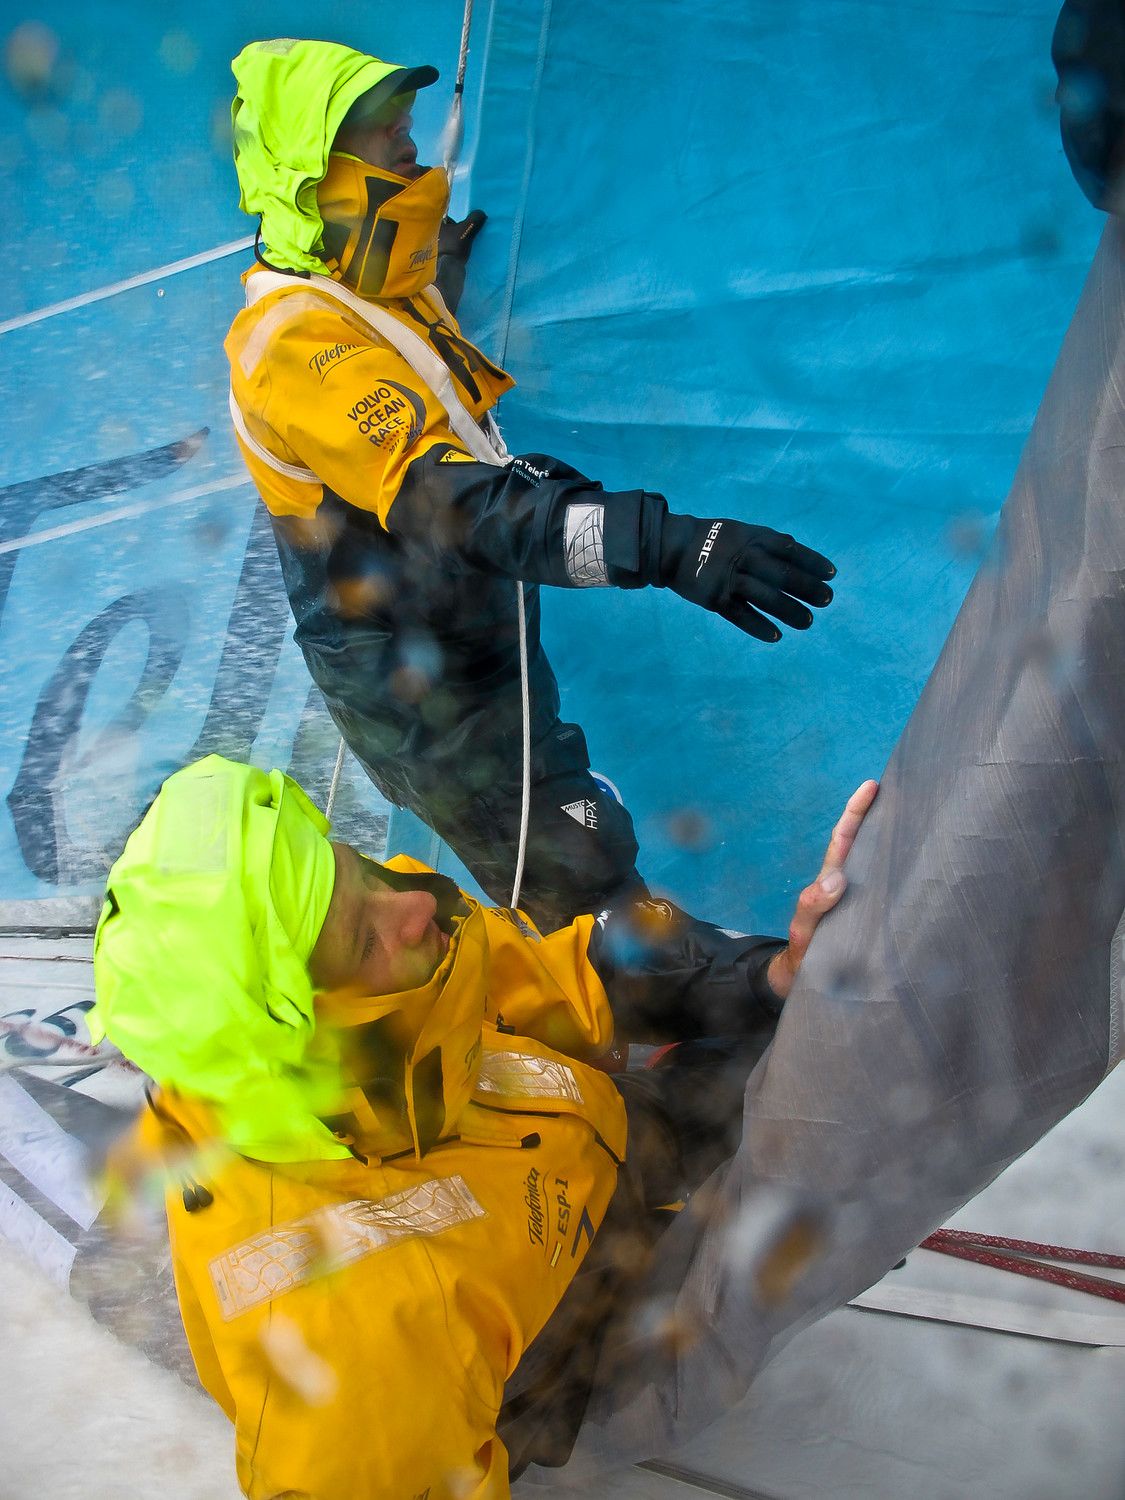 Auf Telefonica werden schon die dicken Gummihandschuhe ausgepackt. © Diego Fructuoso/Volvo Ocean Race